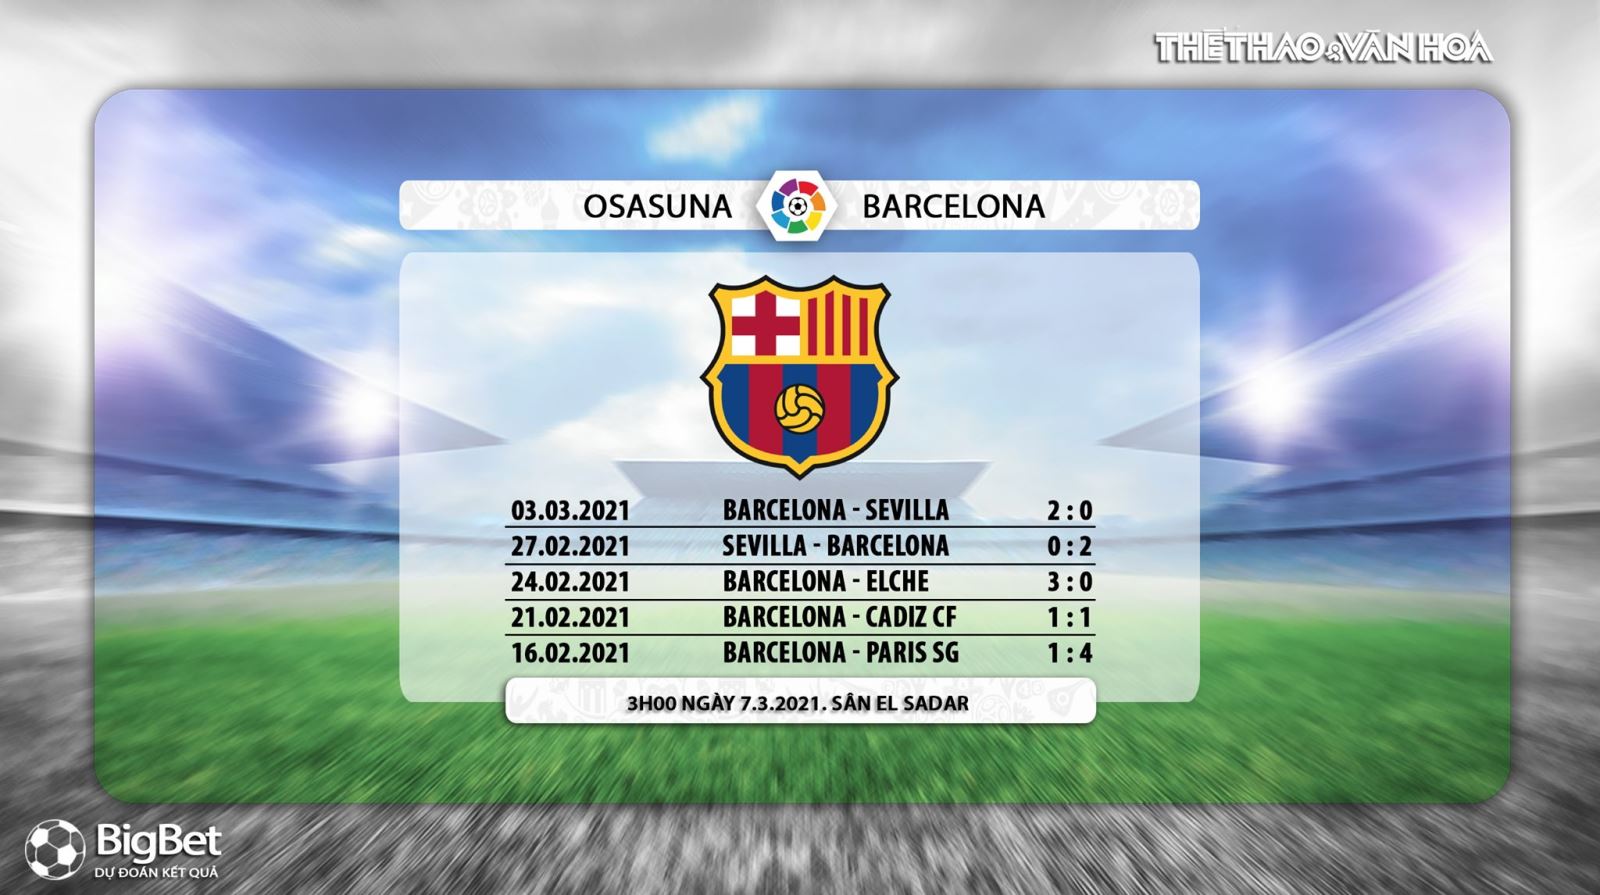 Keo nha cai, nhận định kết quả, Osasuna vs Barcelona, BĐTV trực tiếp bóng đá Tây Ban Nha, Barca, nhận định bóng đá Barcelona đấu với Osasuna, trực tiếp La Liga, bảng xếp hạng bóng đá TBN